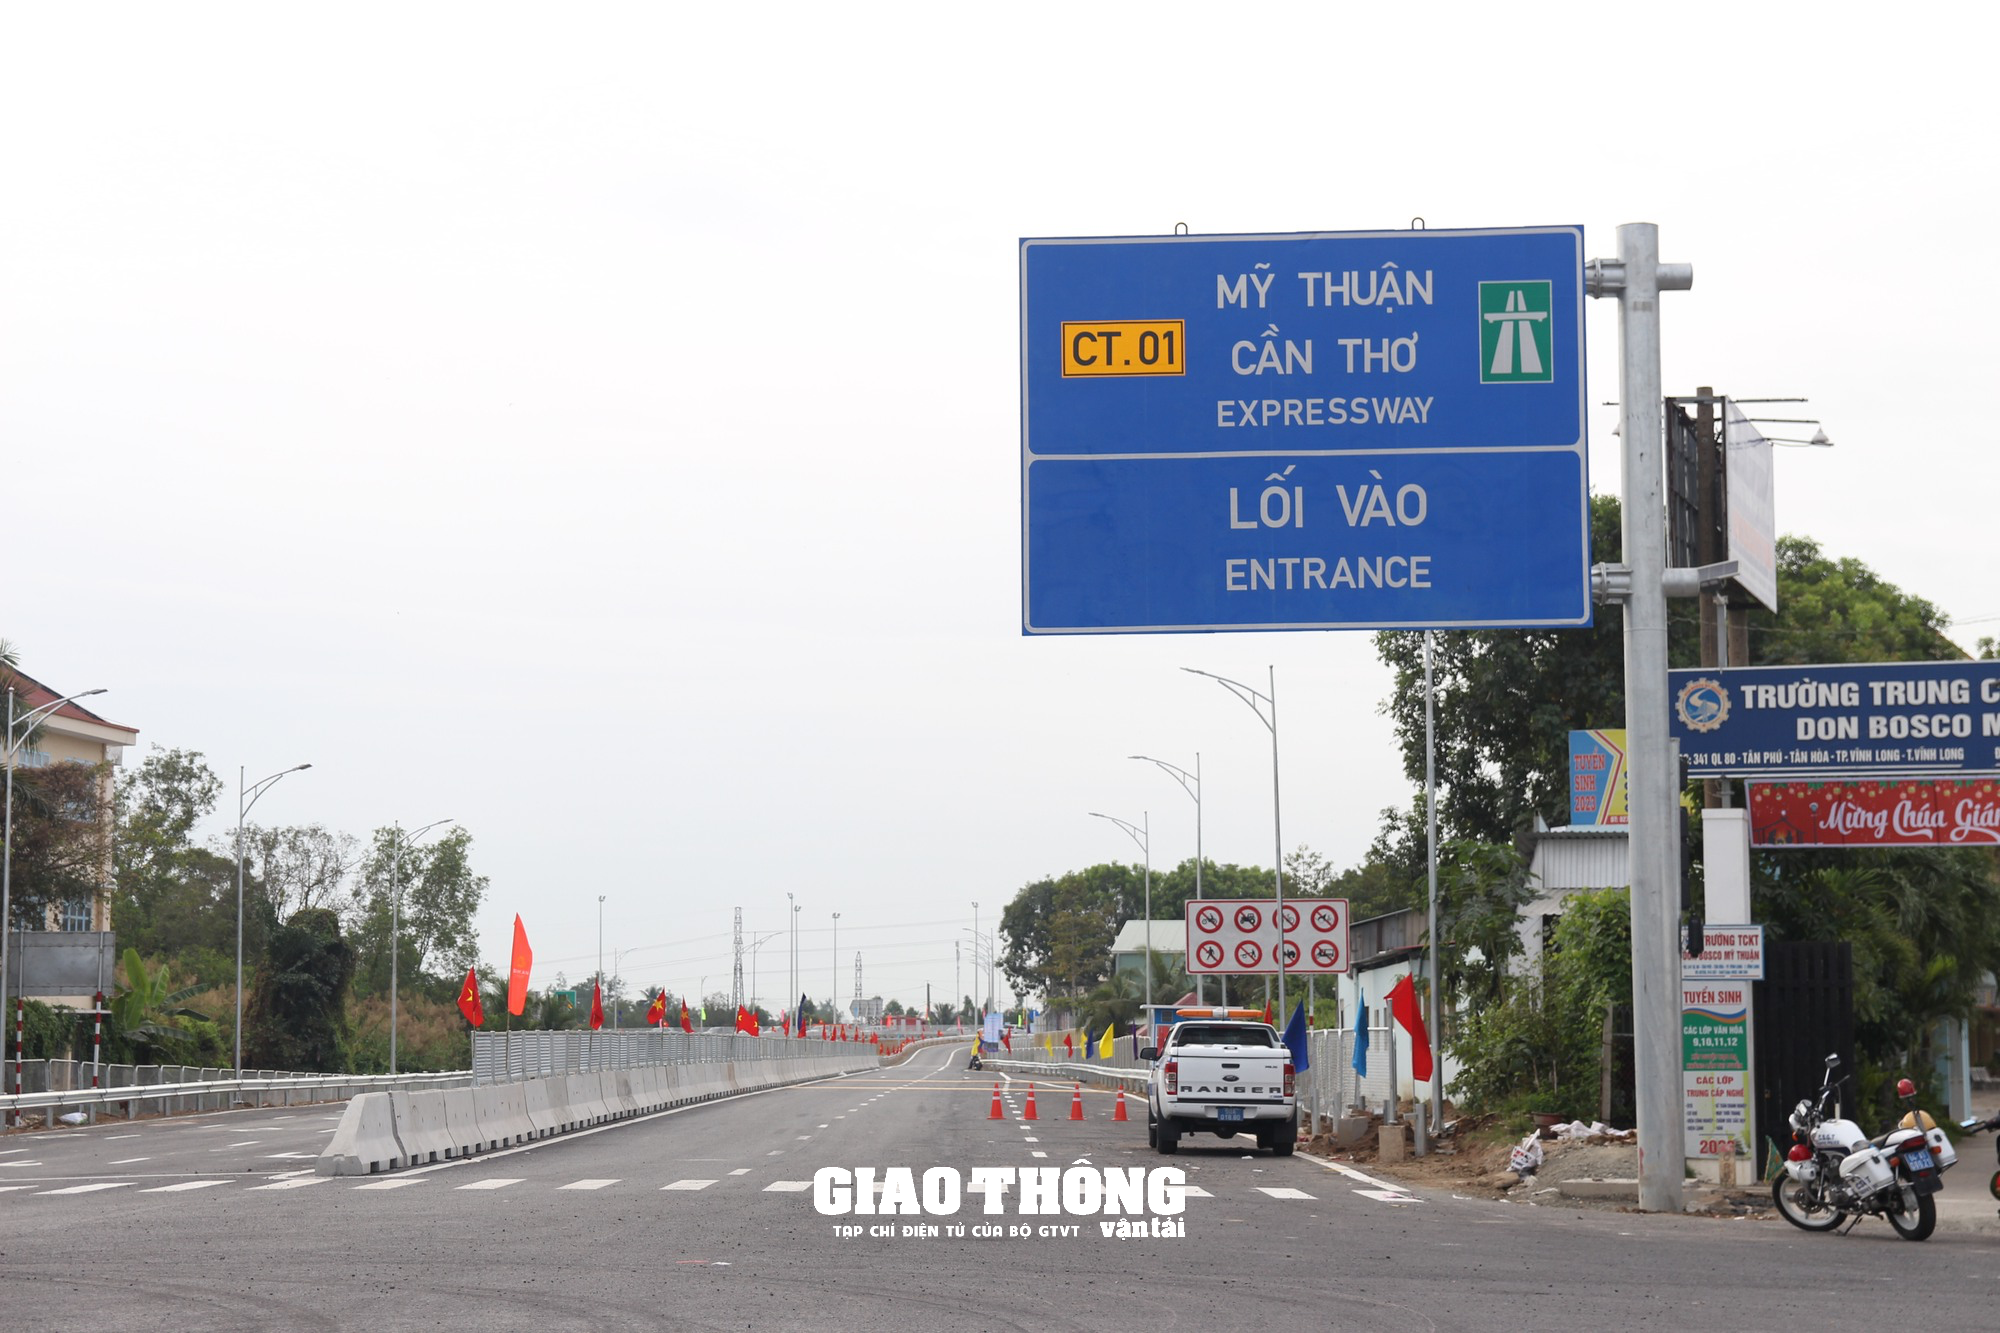 Cao tốc Mỹ Thuận - Cần Thơ cho phép tốc độ tối đa 90km/h- Ảnh 1.